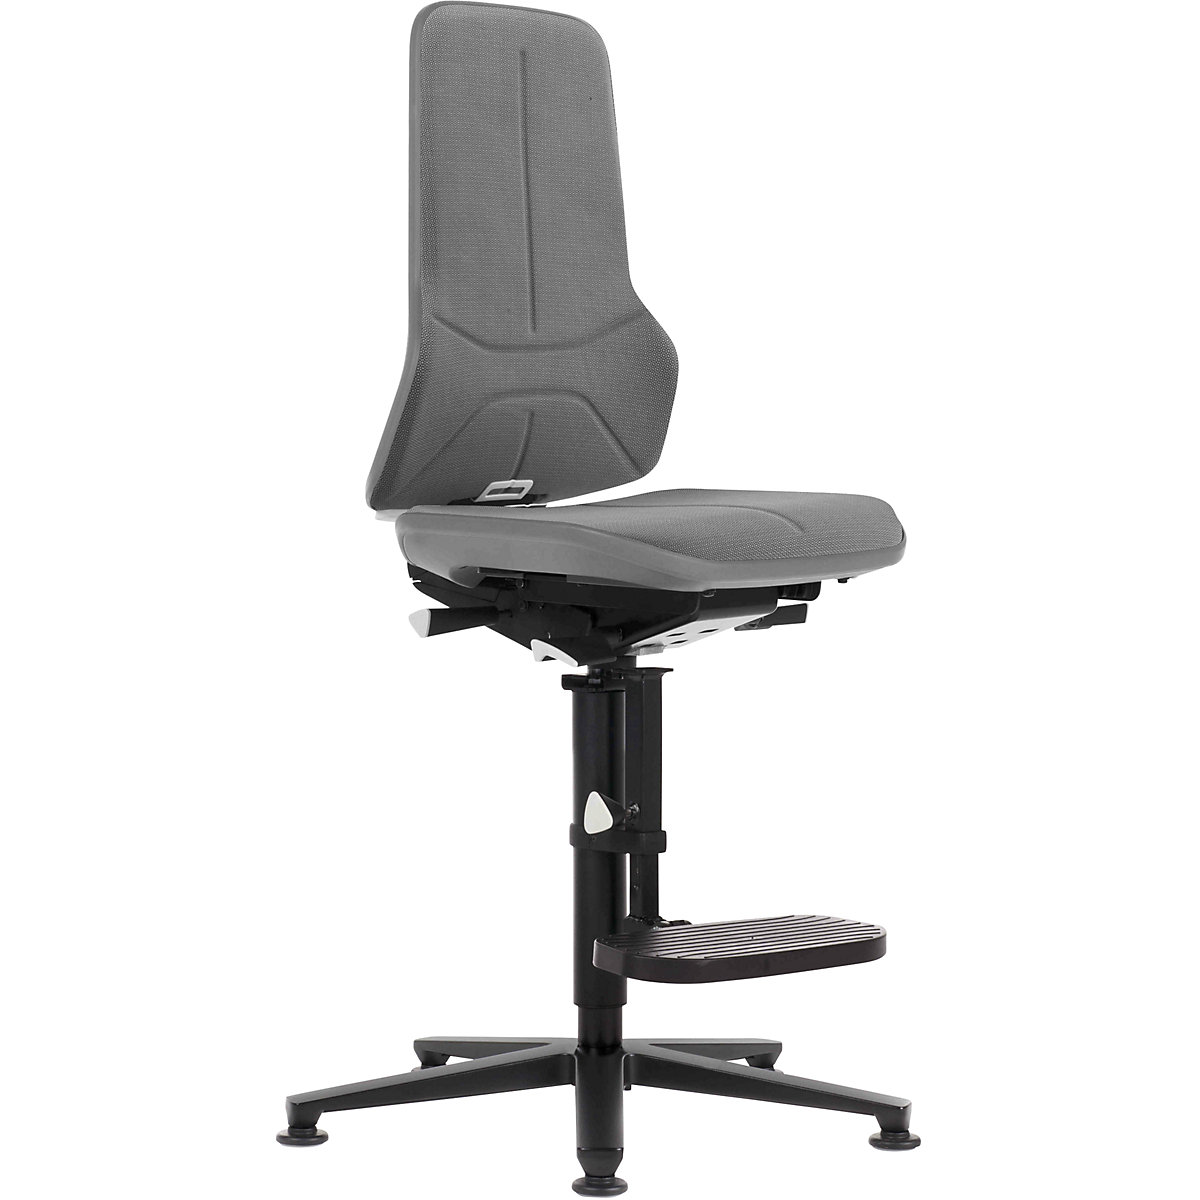 Radna okretna stolica NEON, kliznik, podrška za penjanje – bimos, stalni kontakt, Supertec materijal, fleksibilna traka u sivoj boji-11